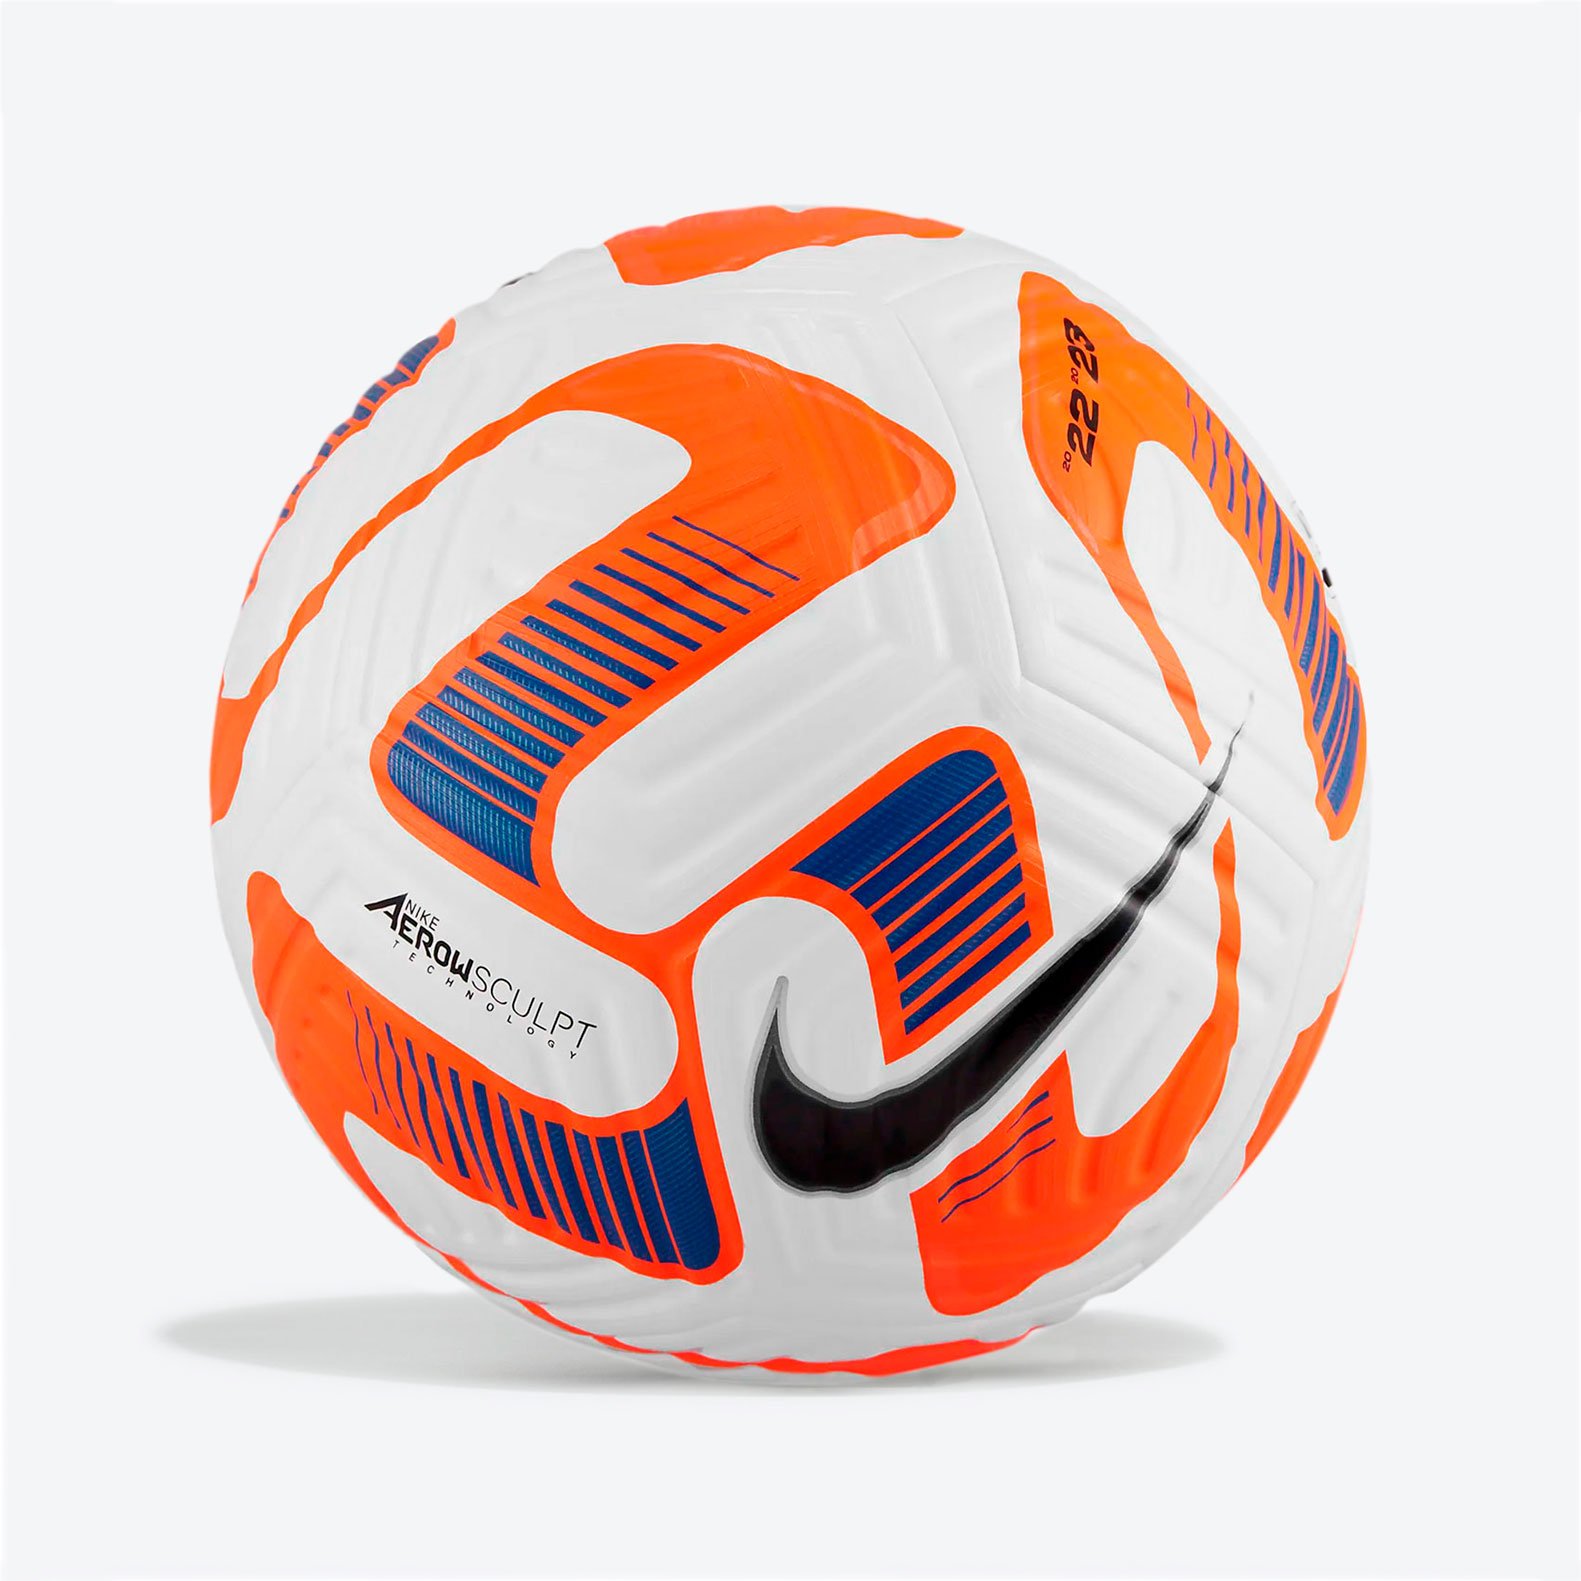 Мяч футбольный Nike Flight - Официальный мяч РПЛ в сезоне 23/24